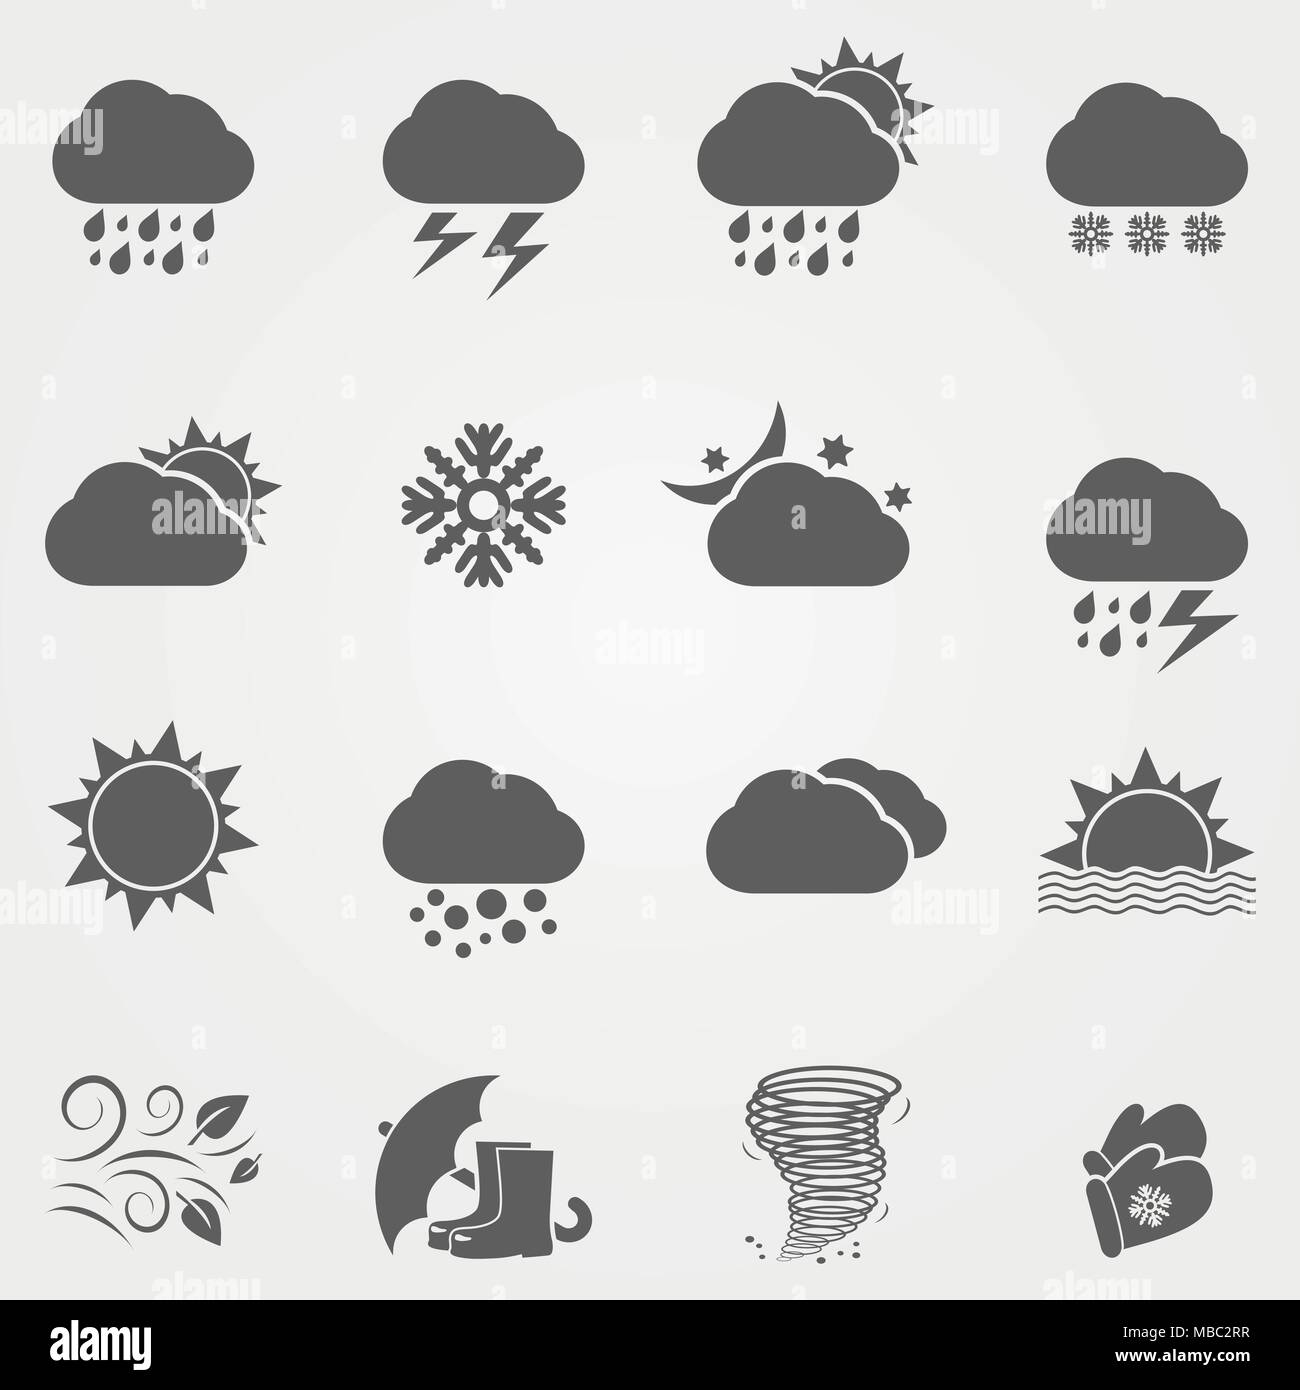 Wetter-Icons Set - Vektor Stock Vektor